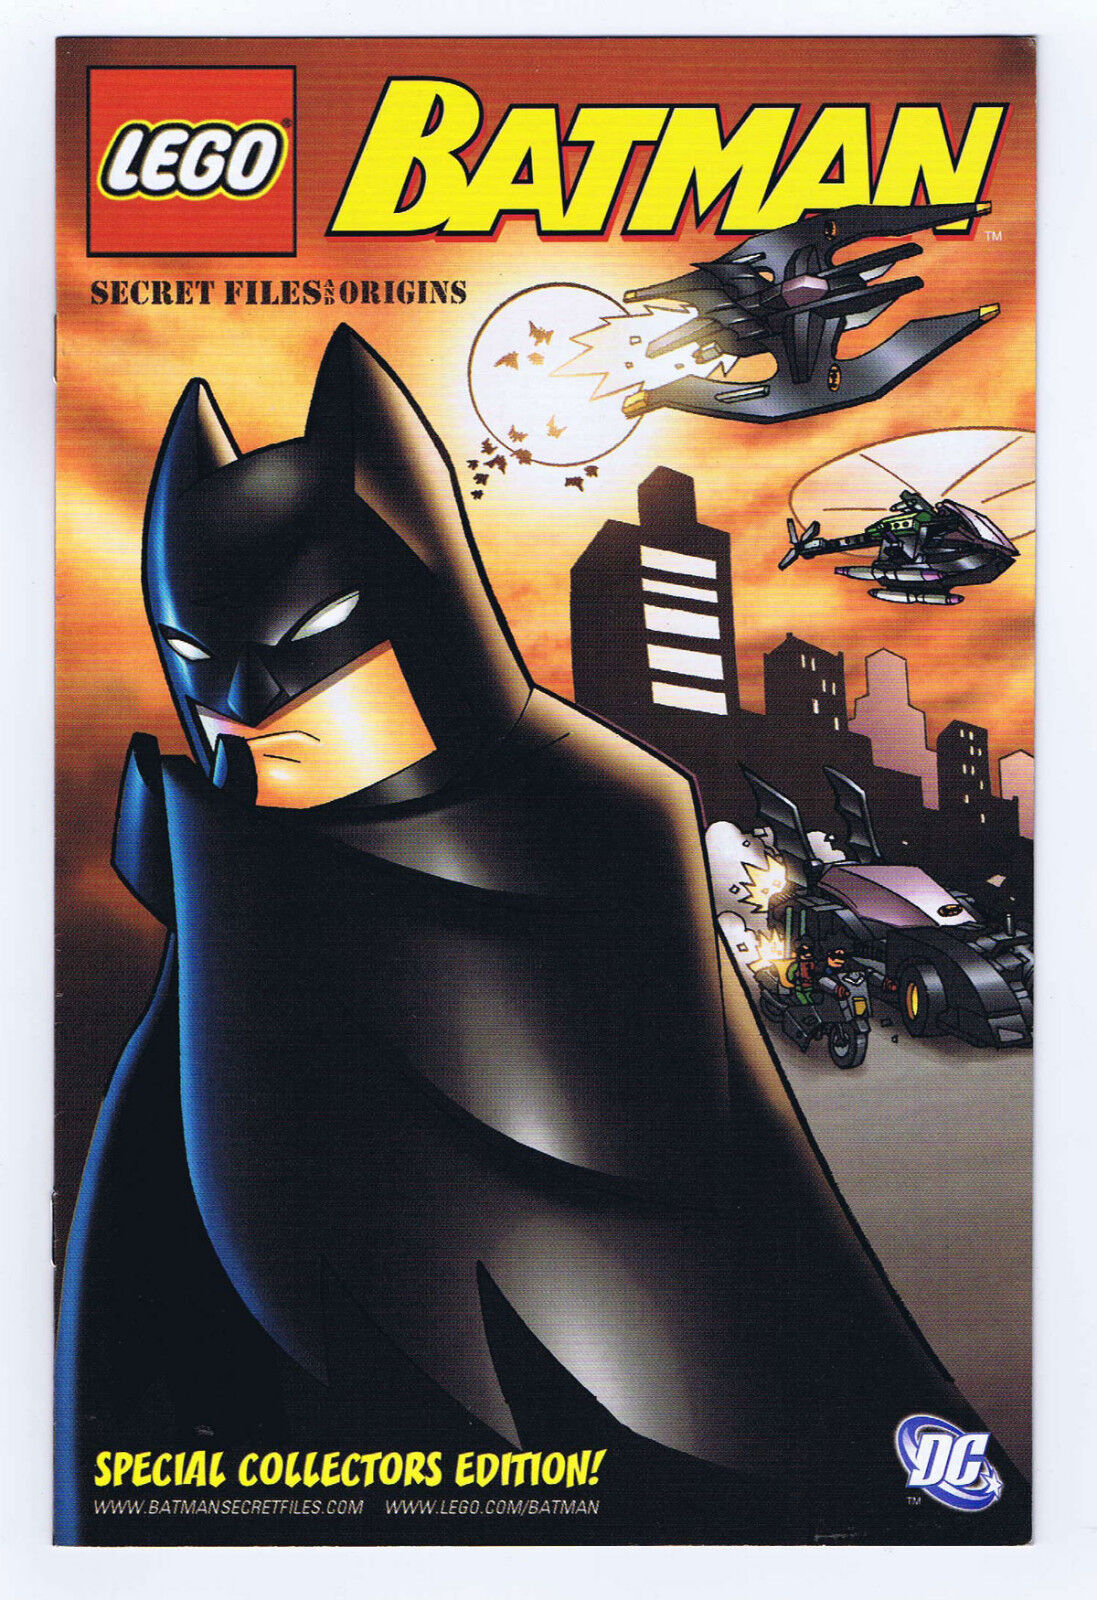 LEGO Batman Secret Files & Origins #0 Promotional Comic Book 2006 DC Comics/LEGO